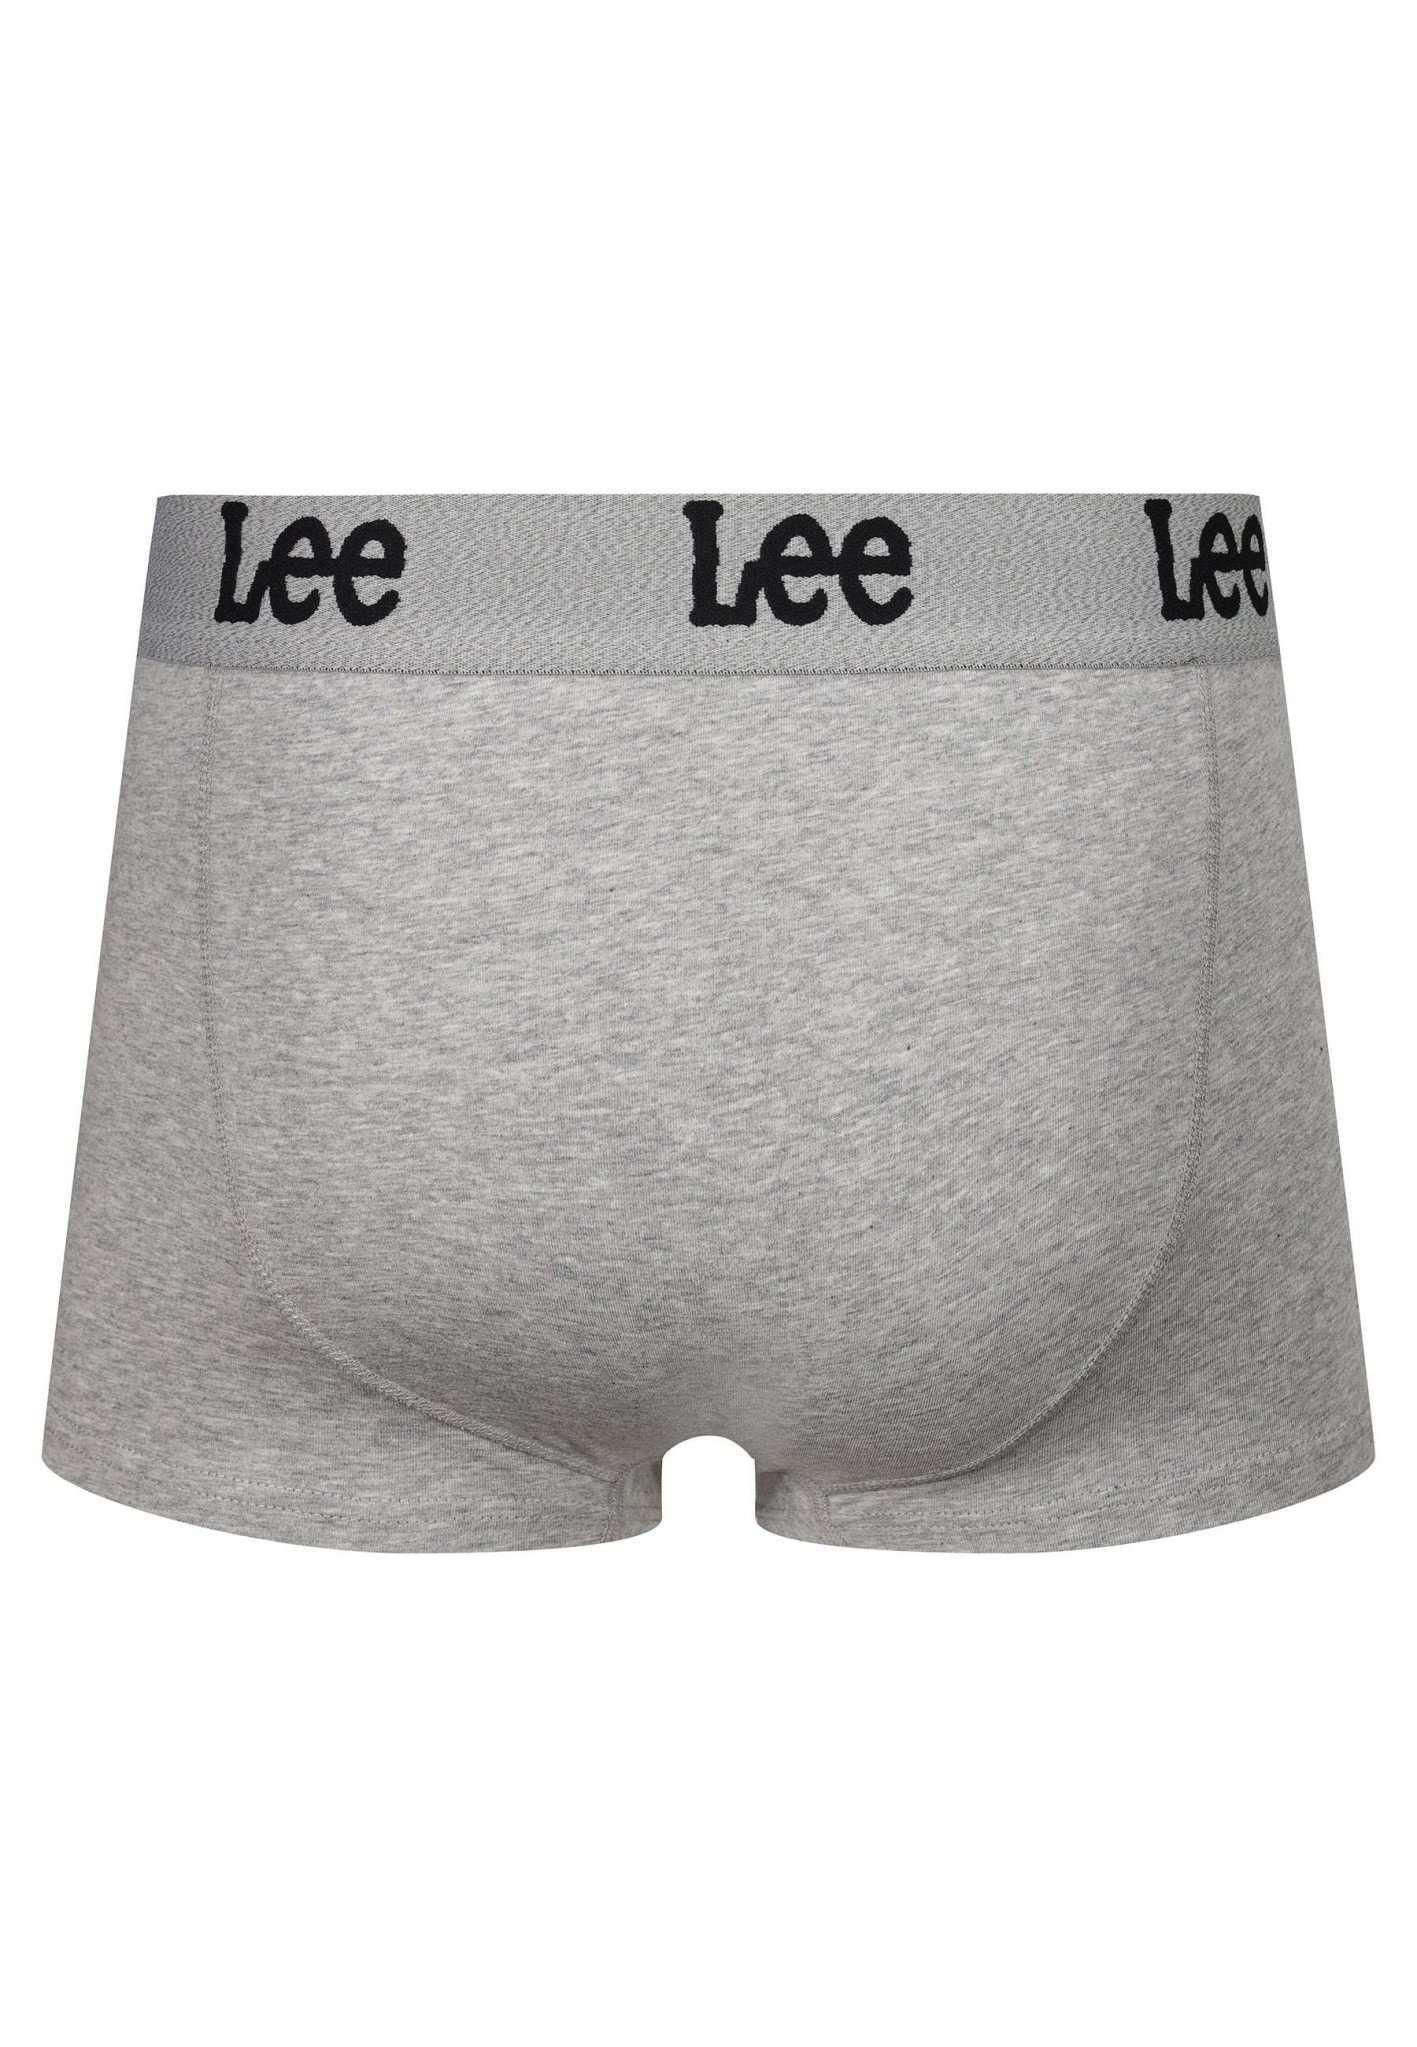 Lee  Panties 3 Pack Trunks Gannon 